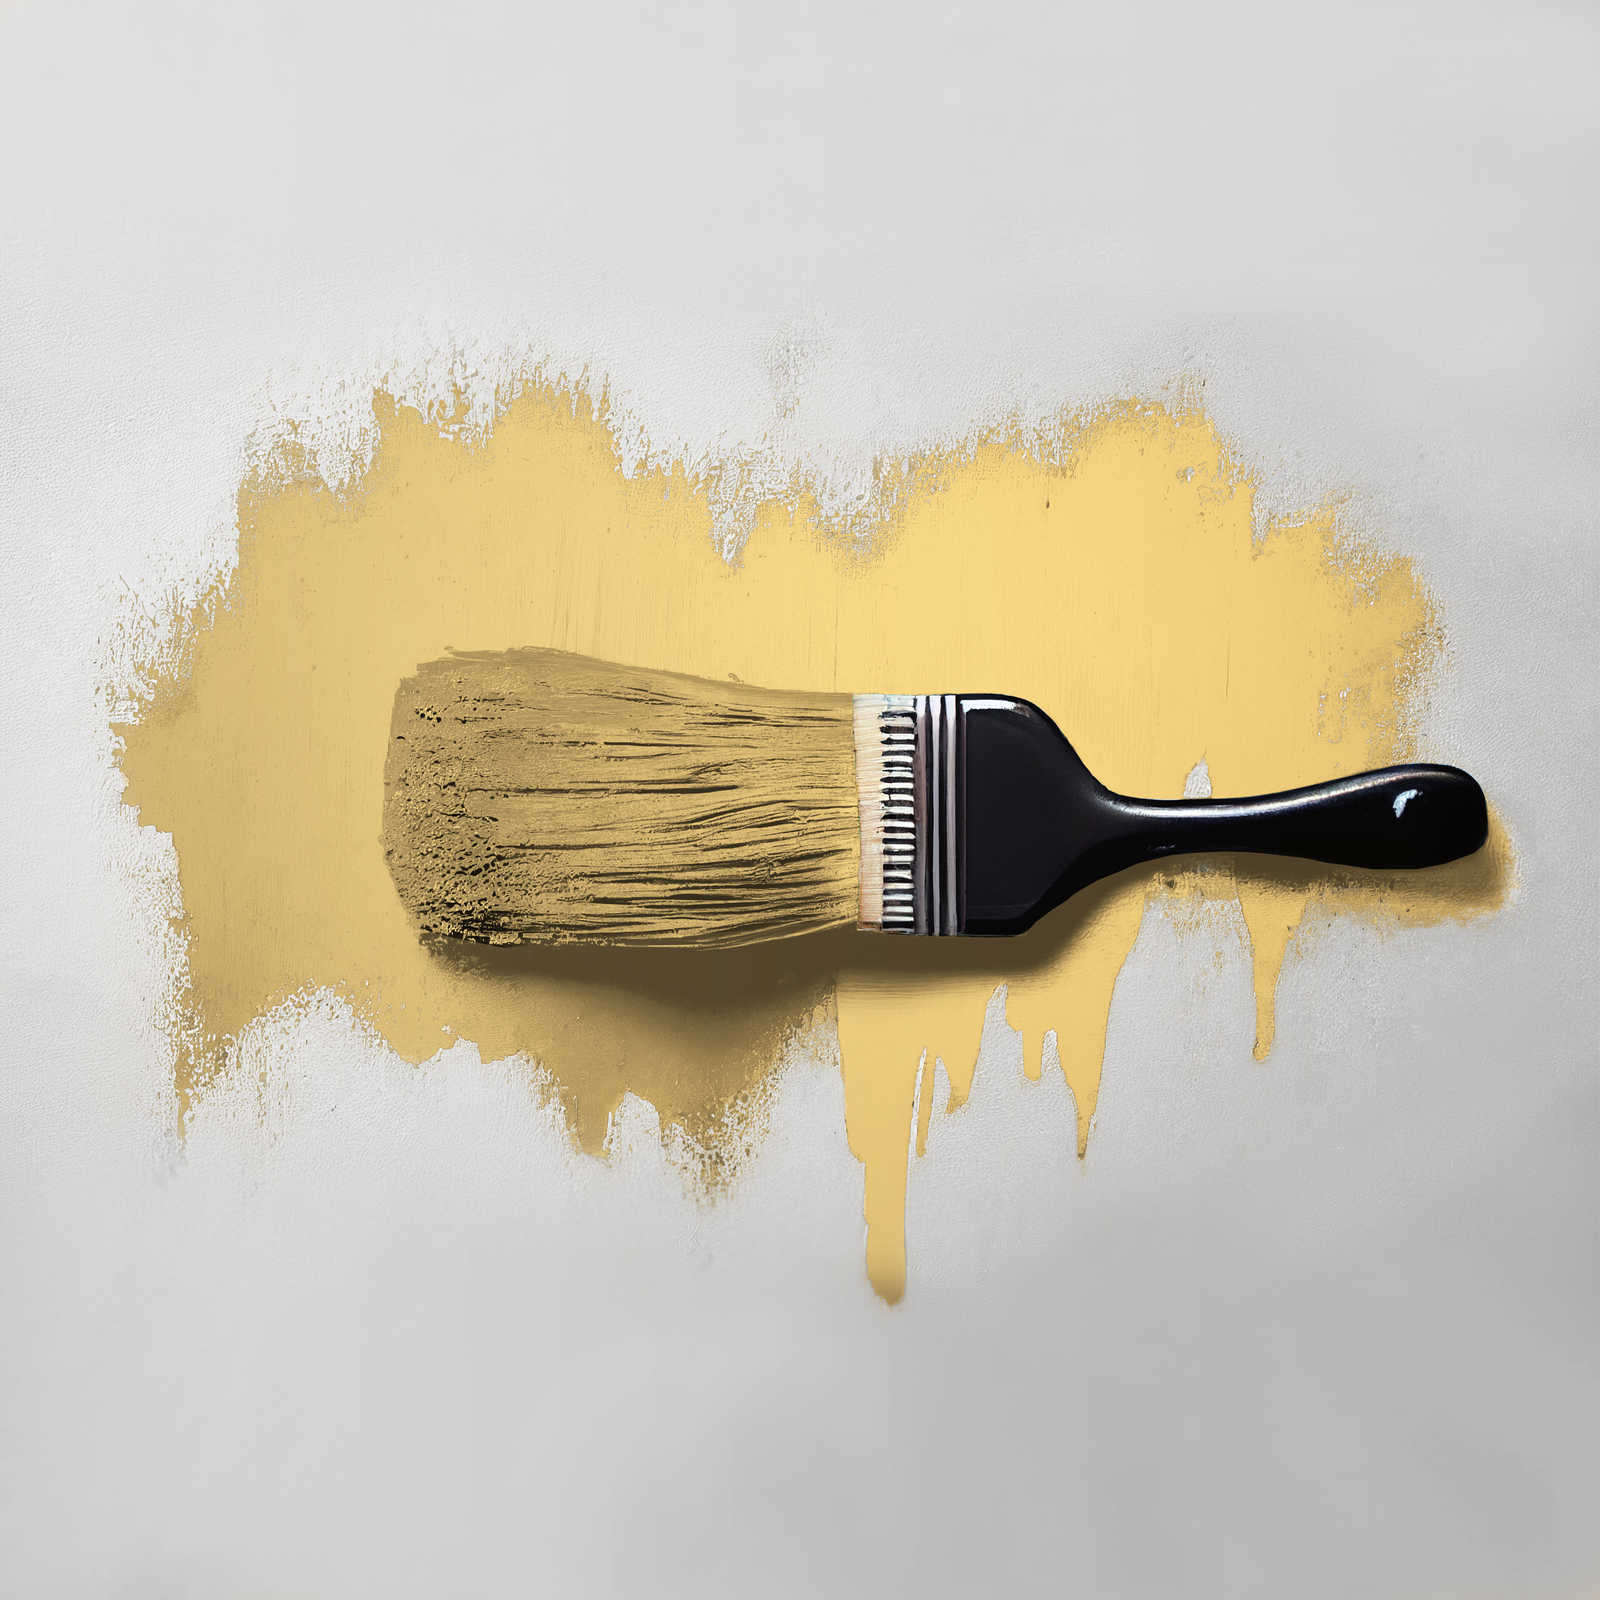             Pittura murale TCK5005 »Playful Pineapple« in giallo amichevole – 2,5 litri
        